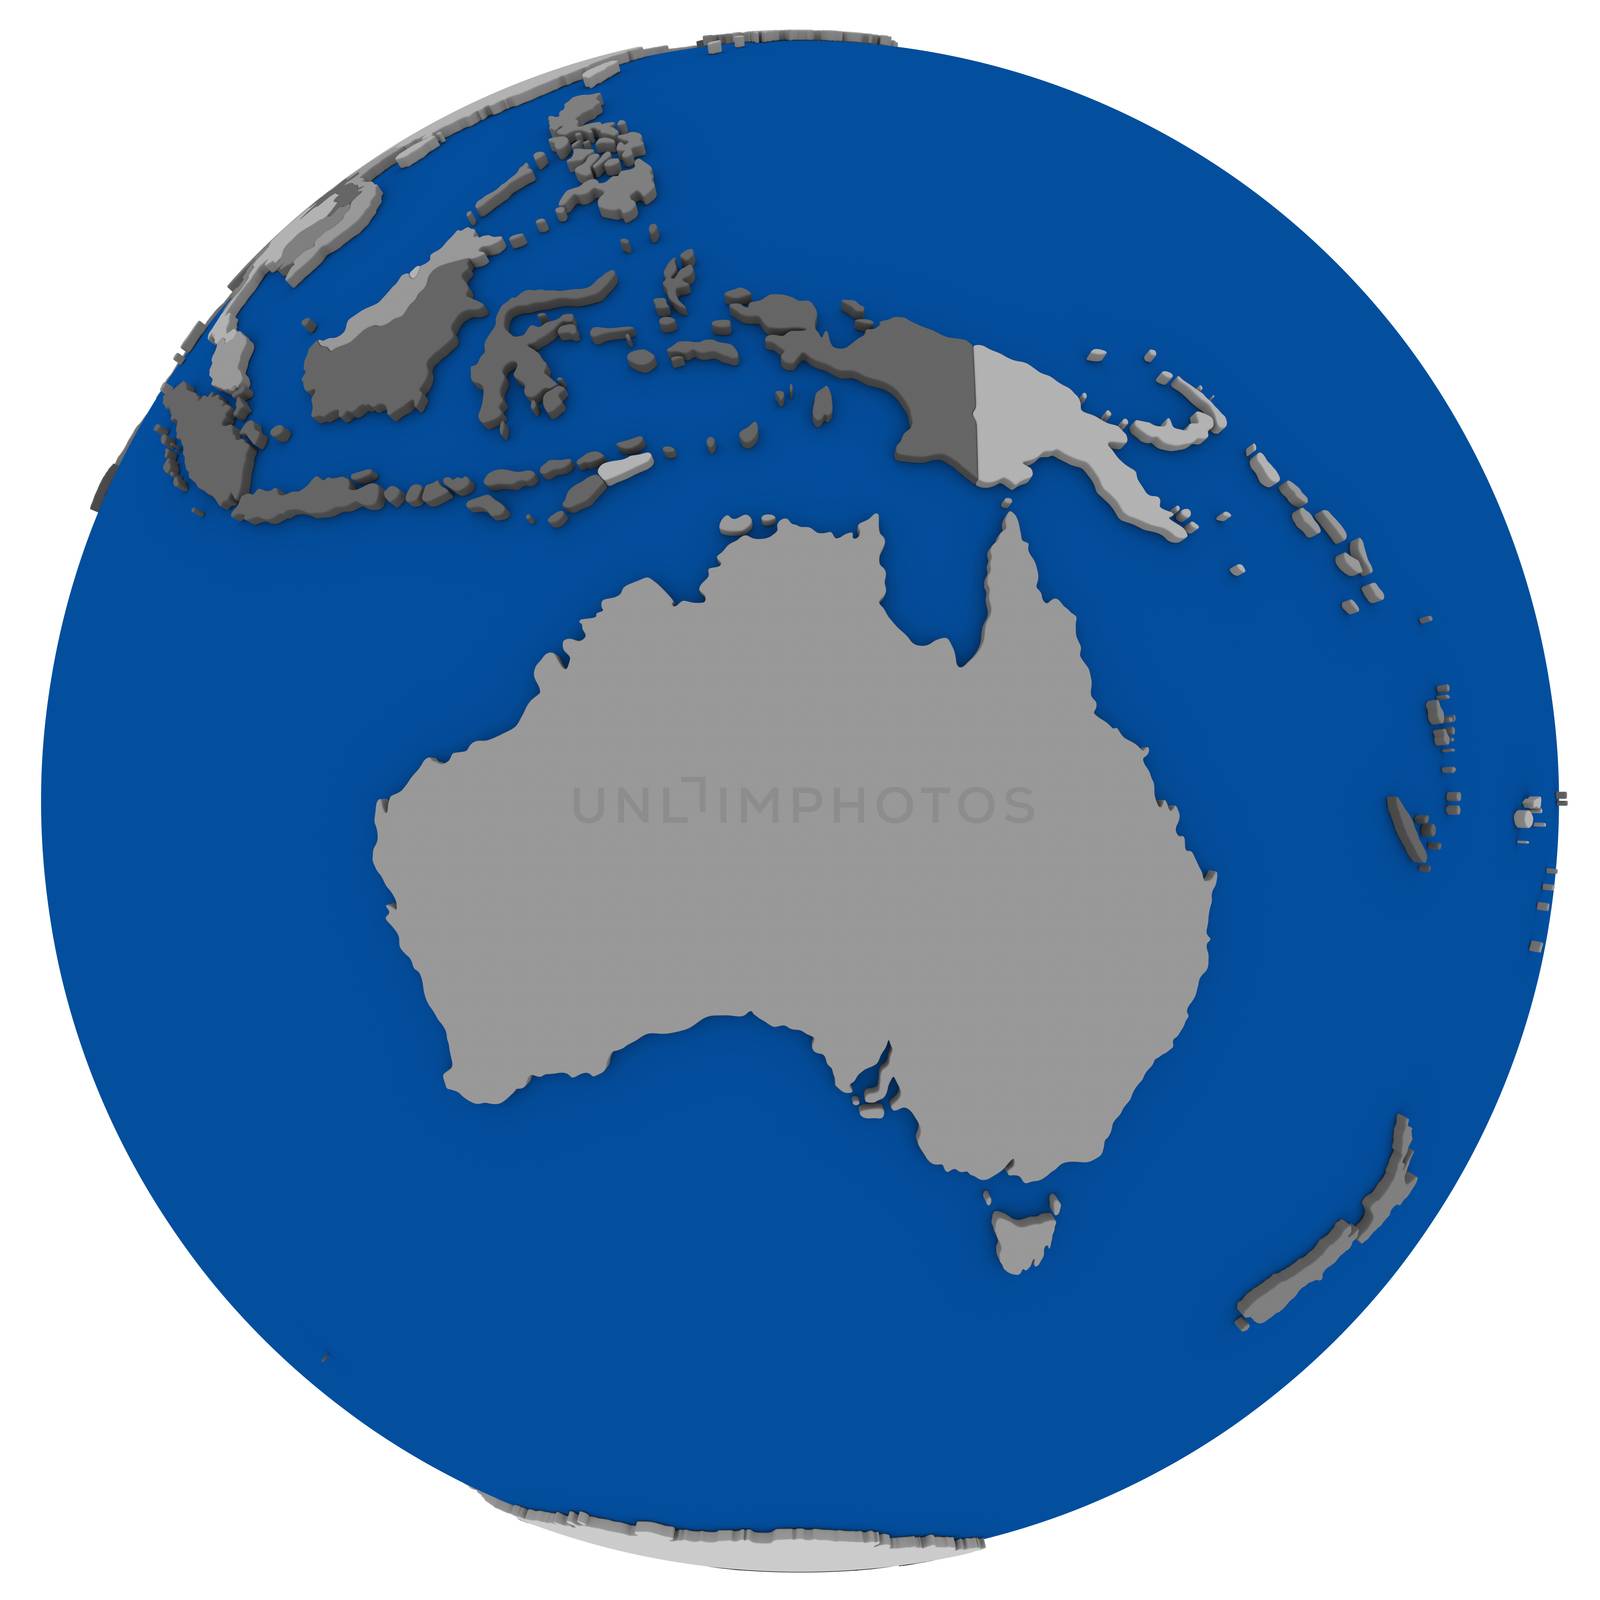 Political map of Australia on globe, illustration isolated on white background